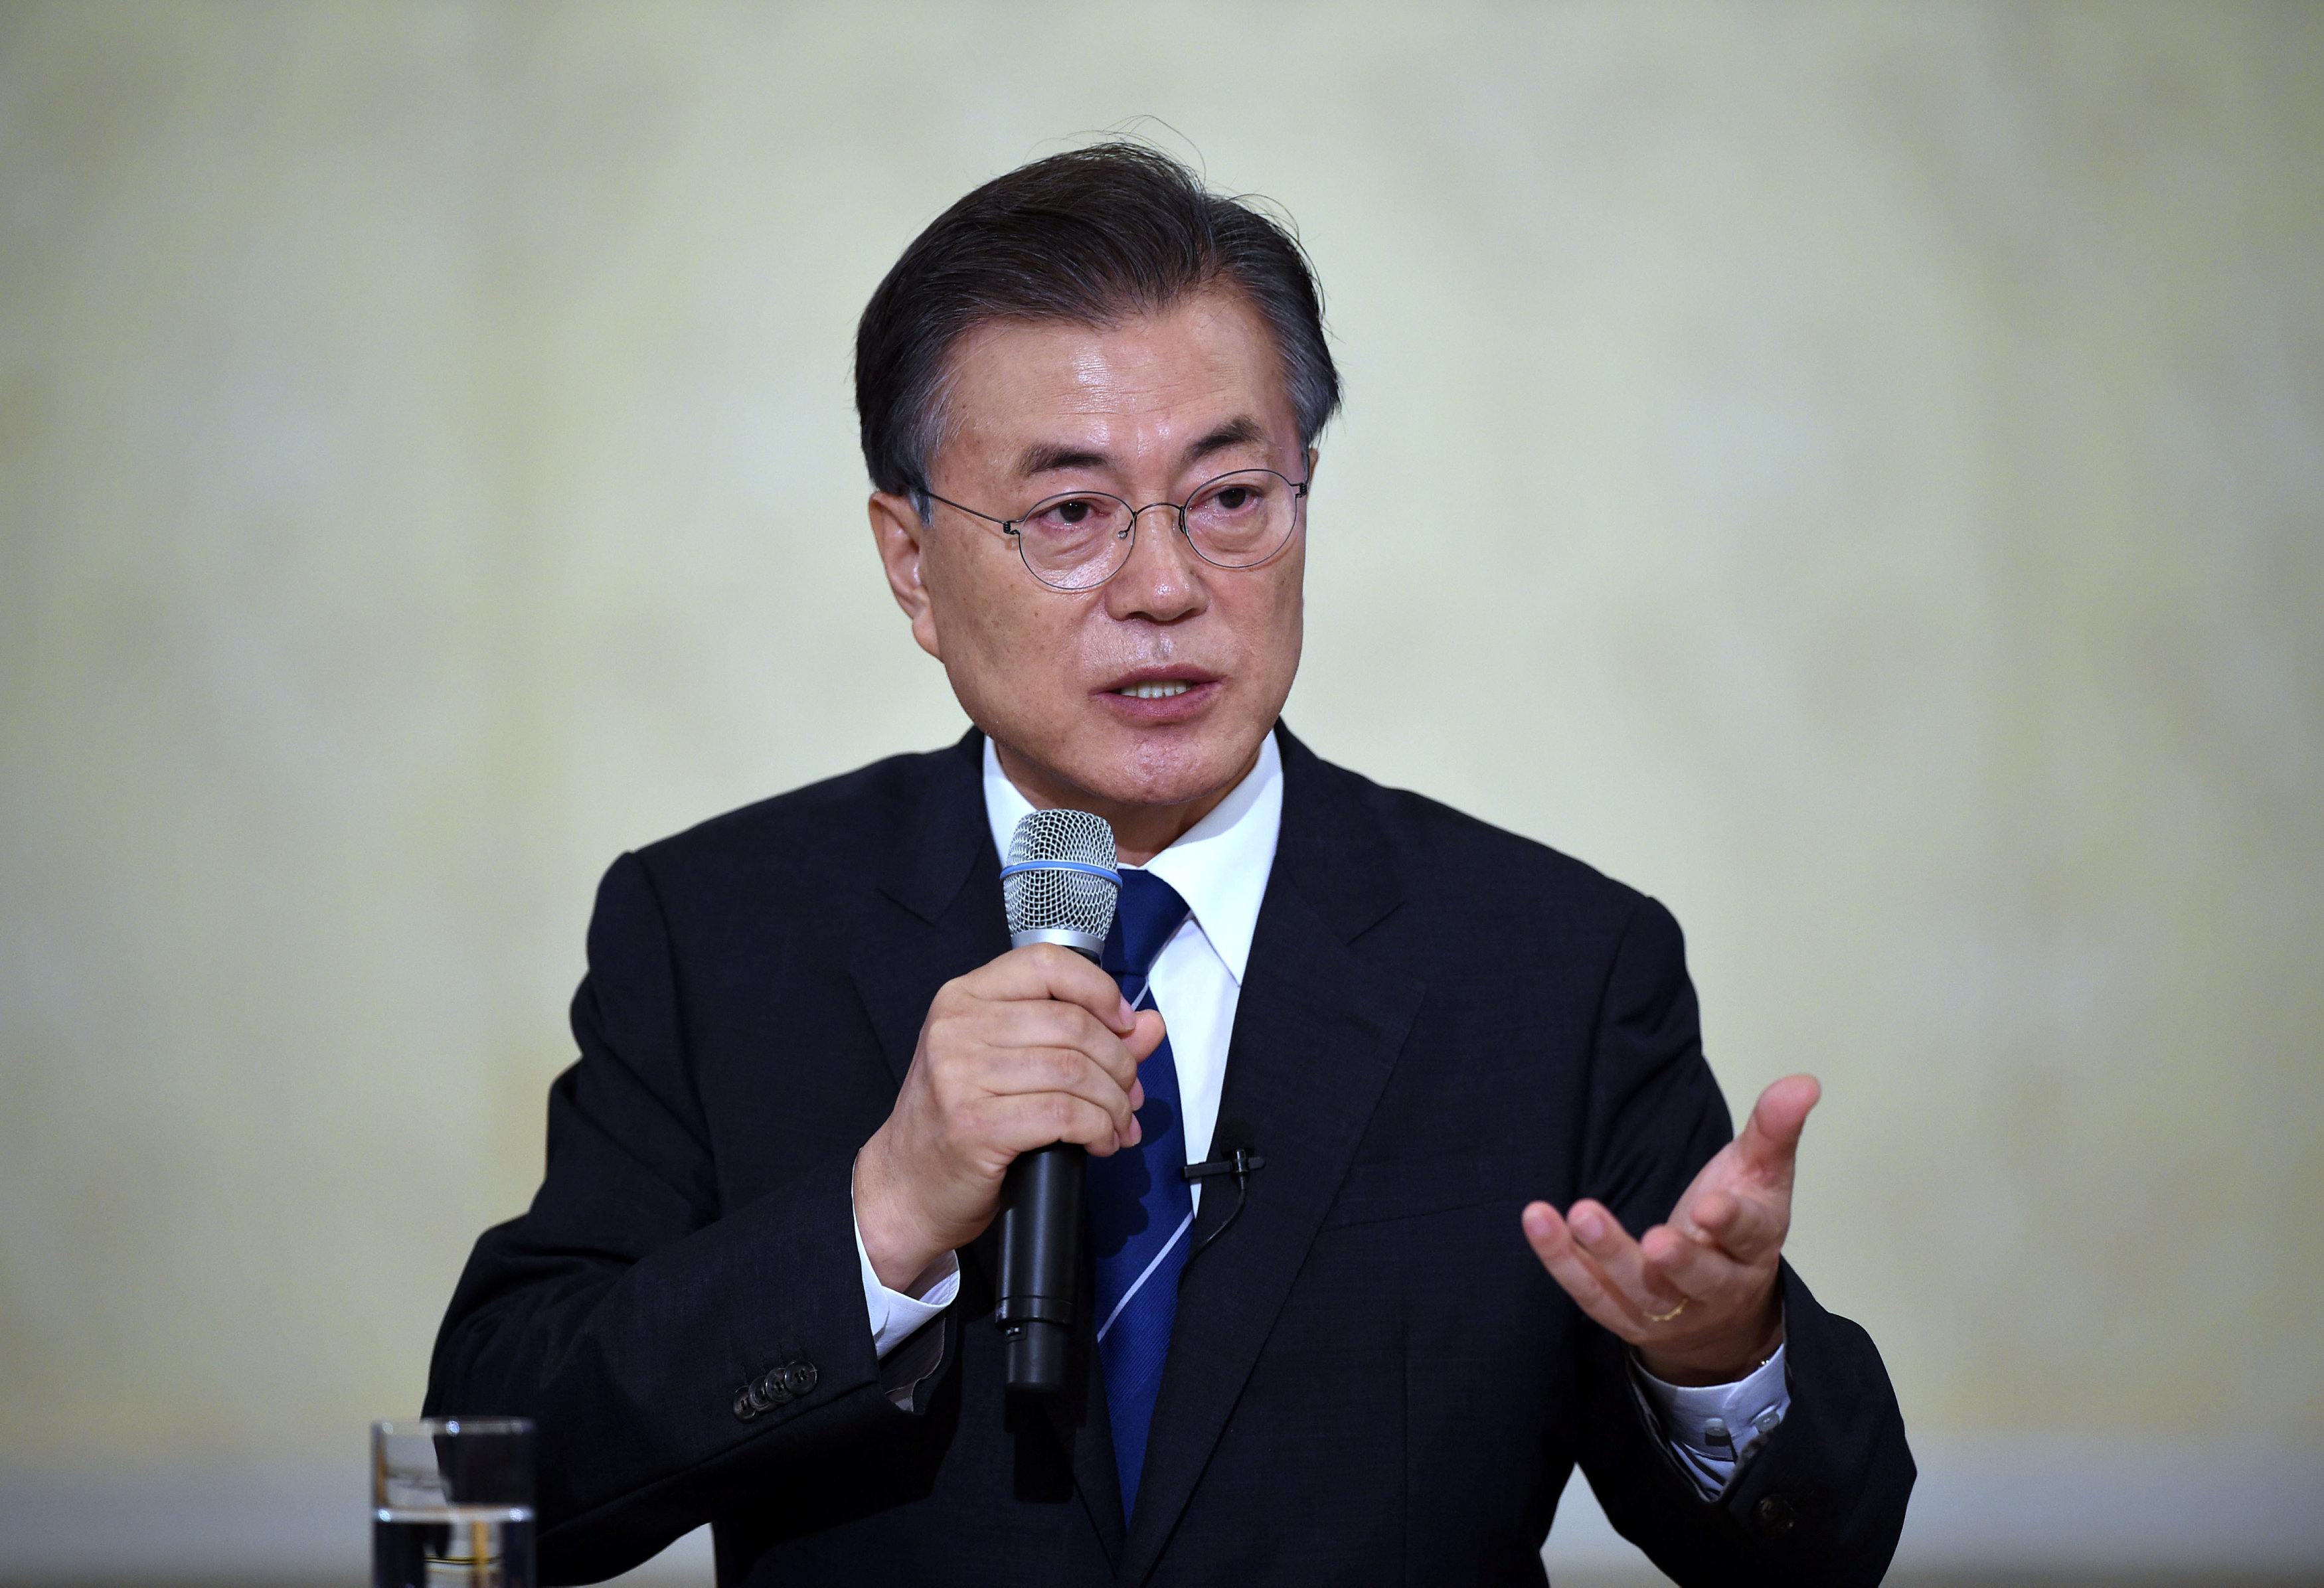 الرئيس مون يؤكد على ضرورة القمة الثانية بين الولايات المتحدة وكوريا الشمالية